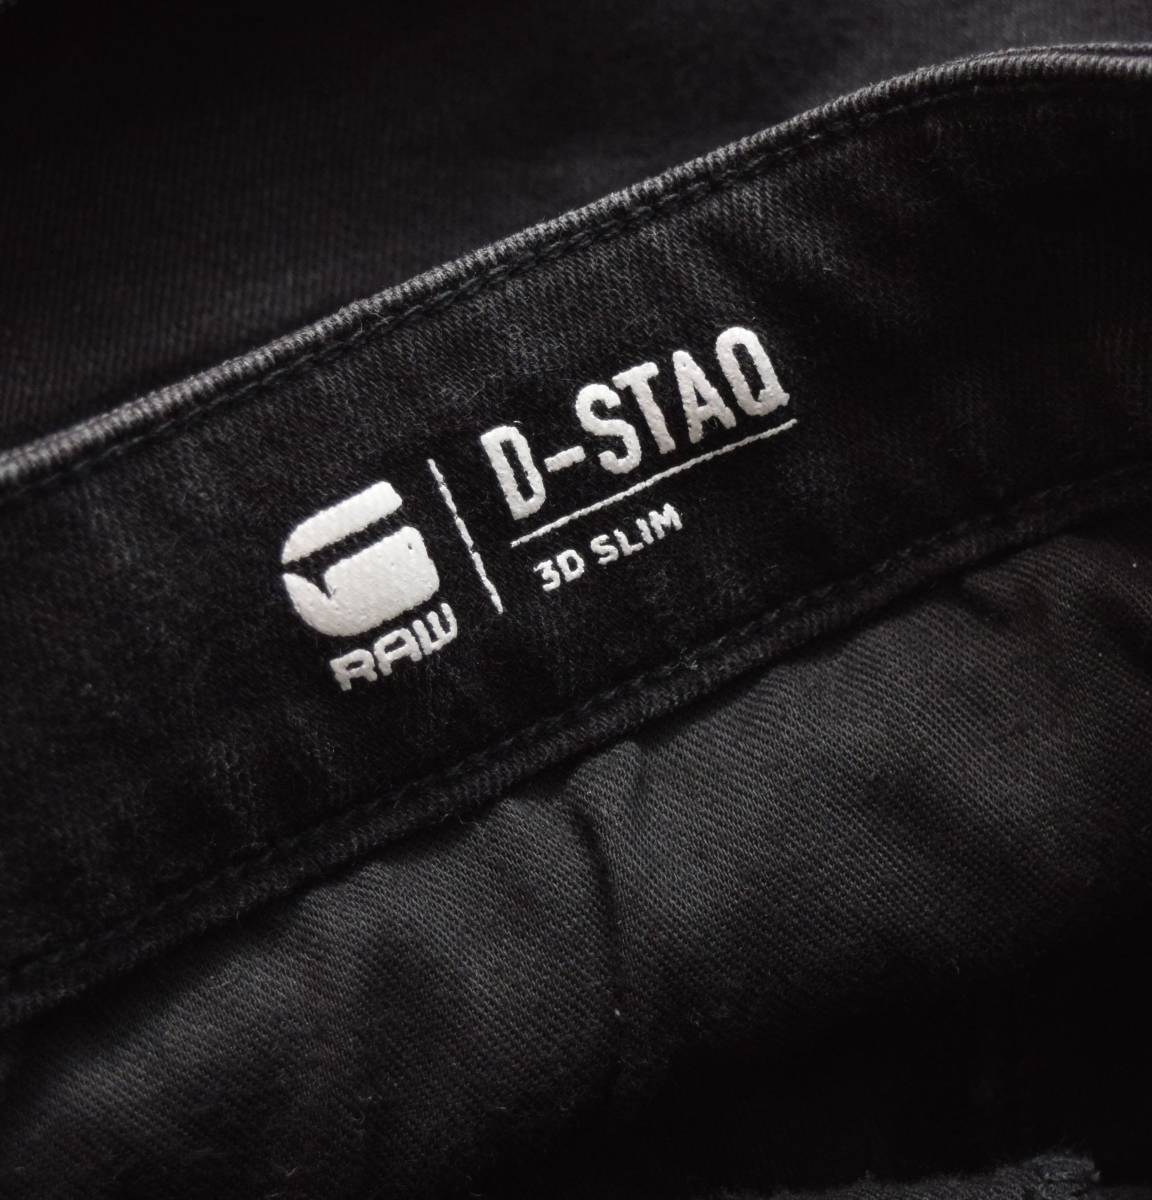 G-STAR RAW ジースター ロウ D-STAQ 3D SLIM スリム デニムパンツ 超ストレッチ サイズ26_画像8